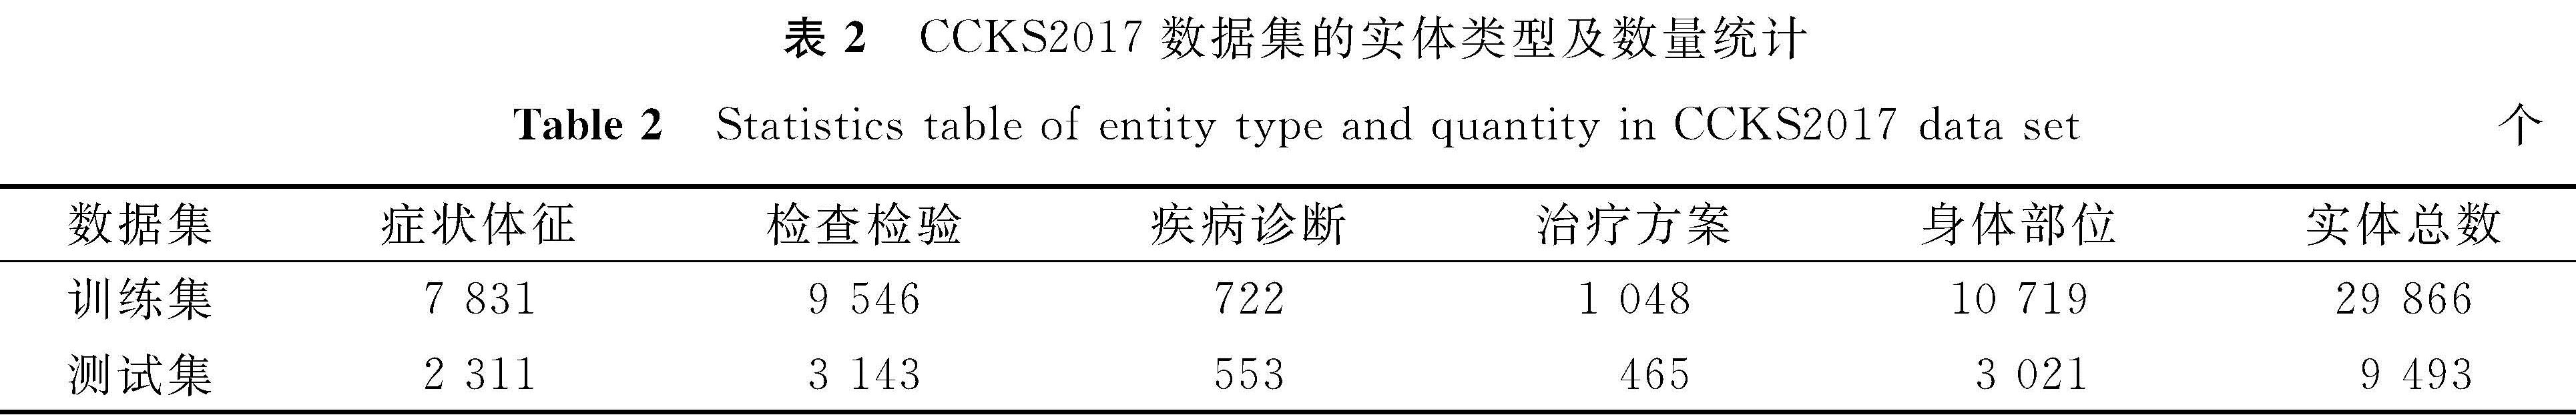 表2 CCKS2017数据集的实体类型及数量统计<br/>Table 2 Statistics table of entity type and quantity in CCKS2017 data set个